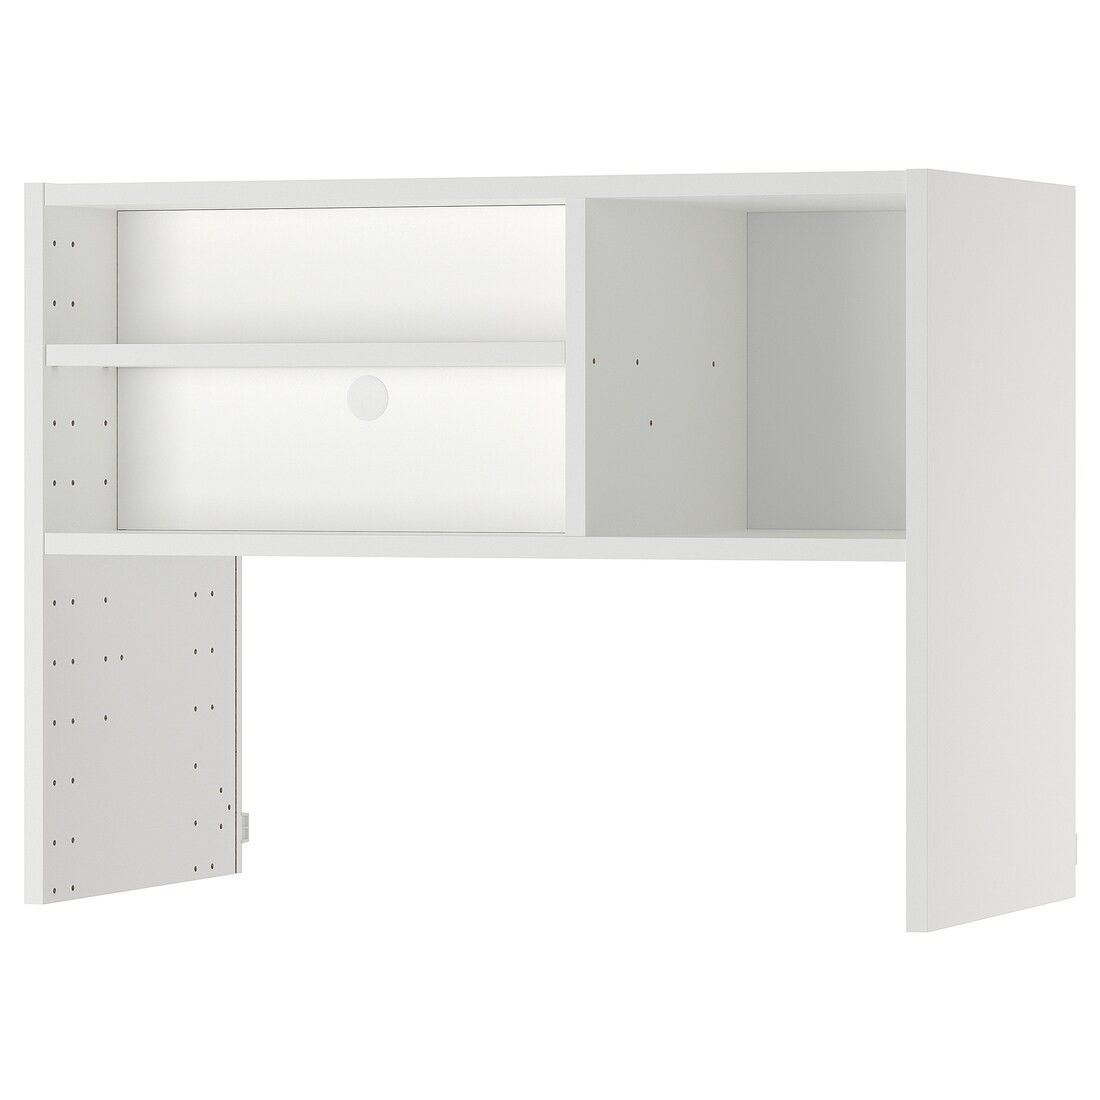 IKEA METOD МЕТОД Навесной шкаф для встроенной вытяжки, белый 90547642 905.476.42